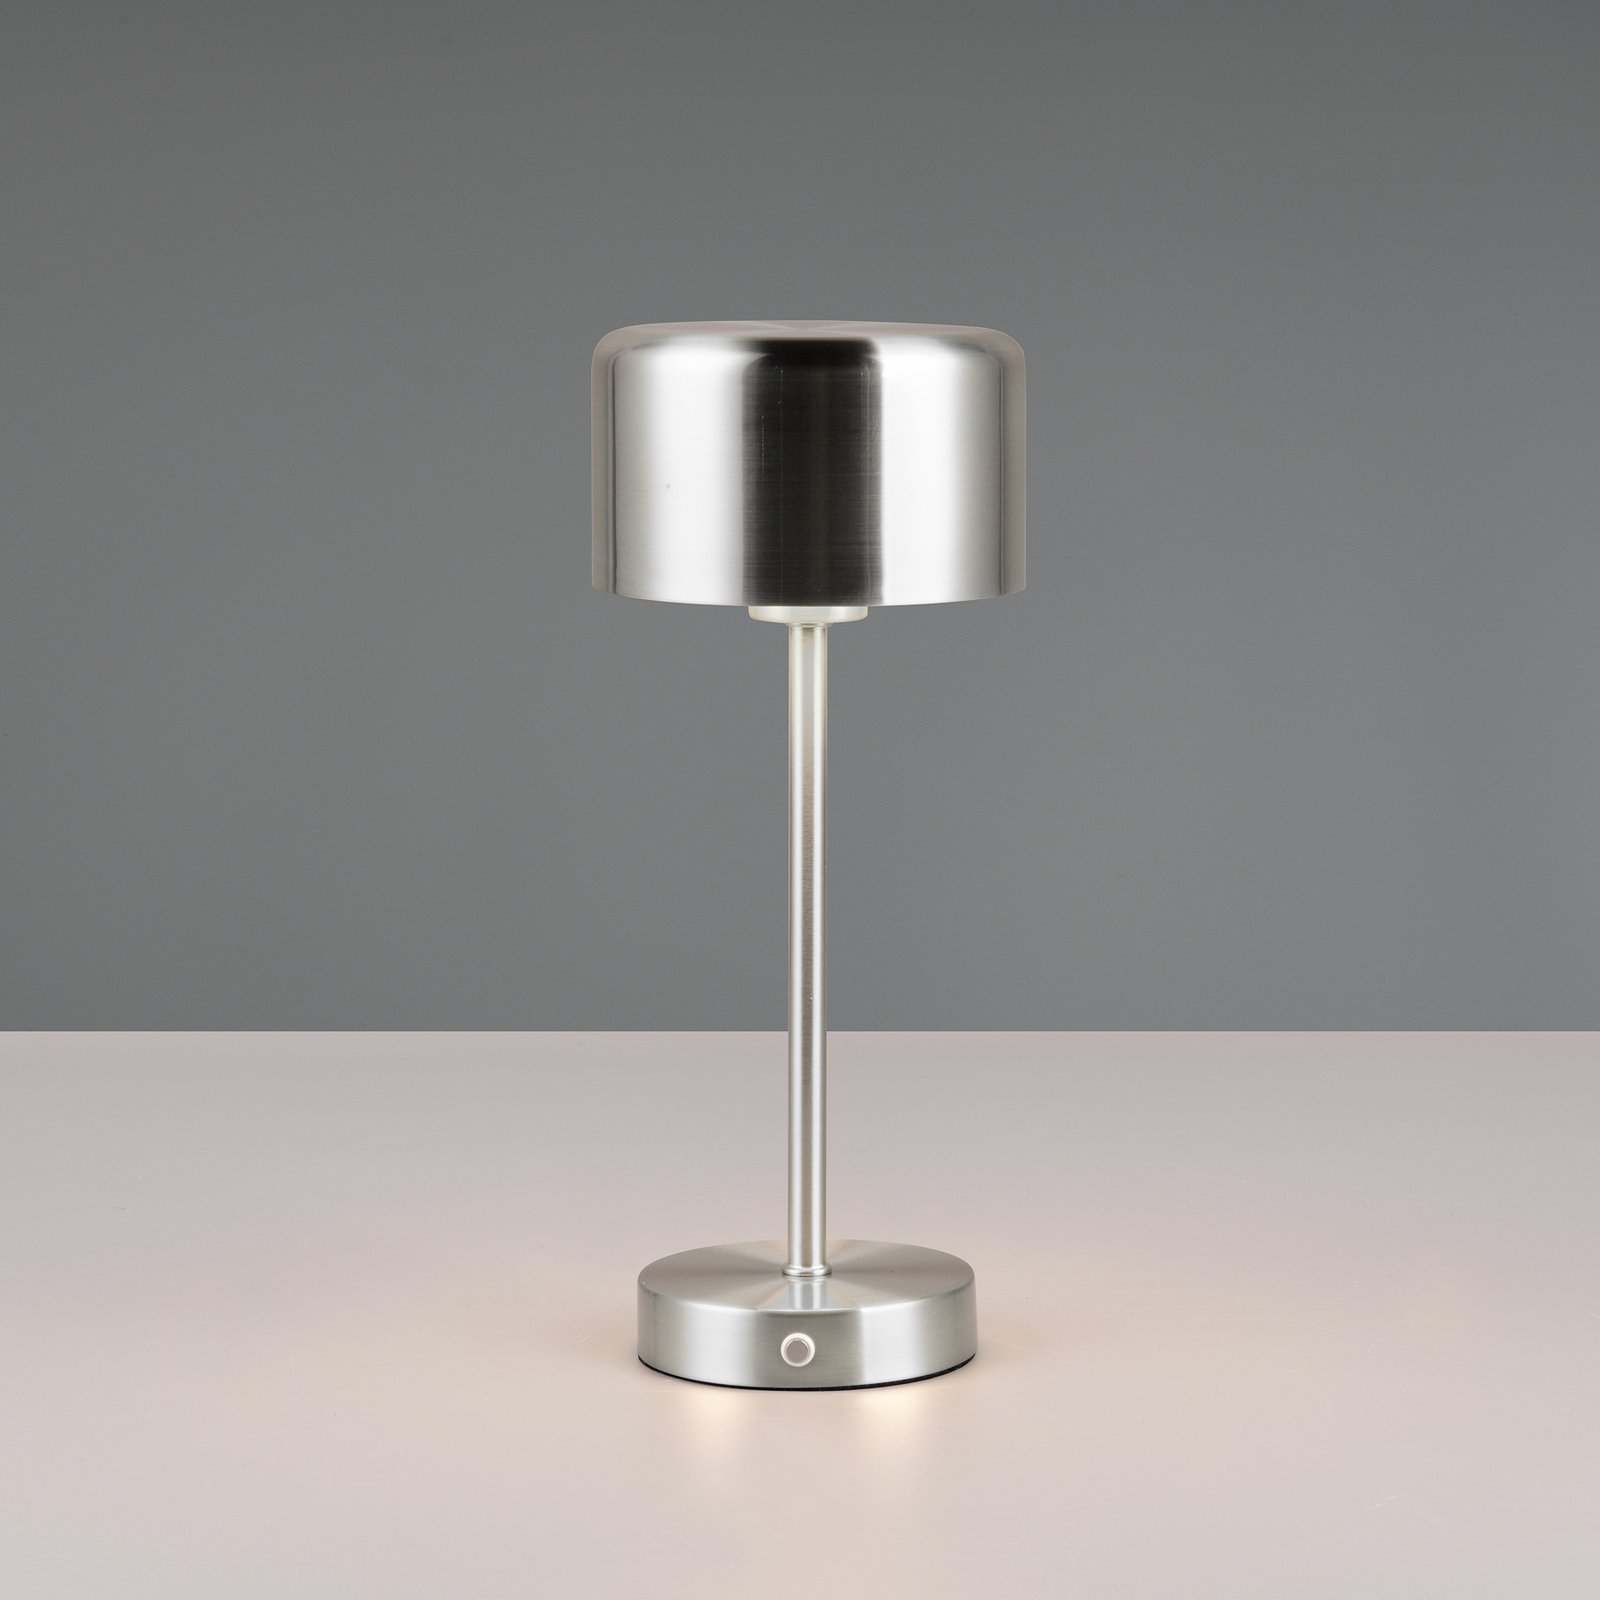 Jeff LED ladattava pöytävalaisin, nikkelin värinen, korkeus 30 cm, metallia